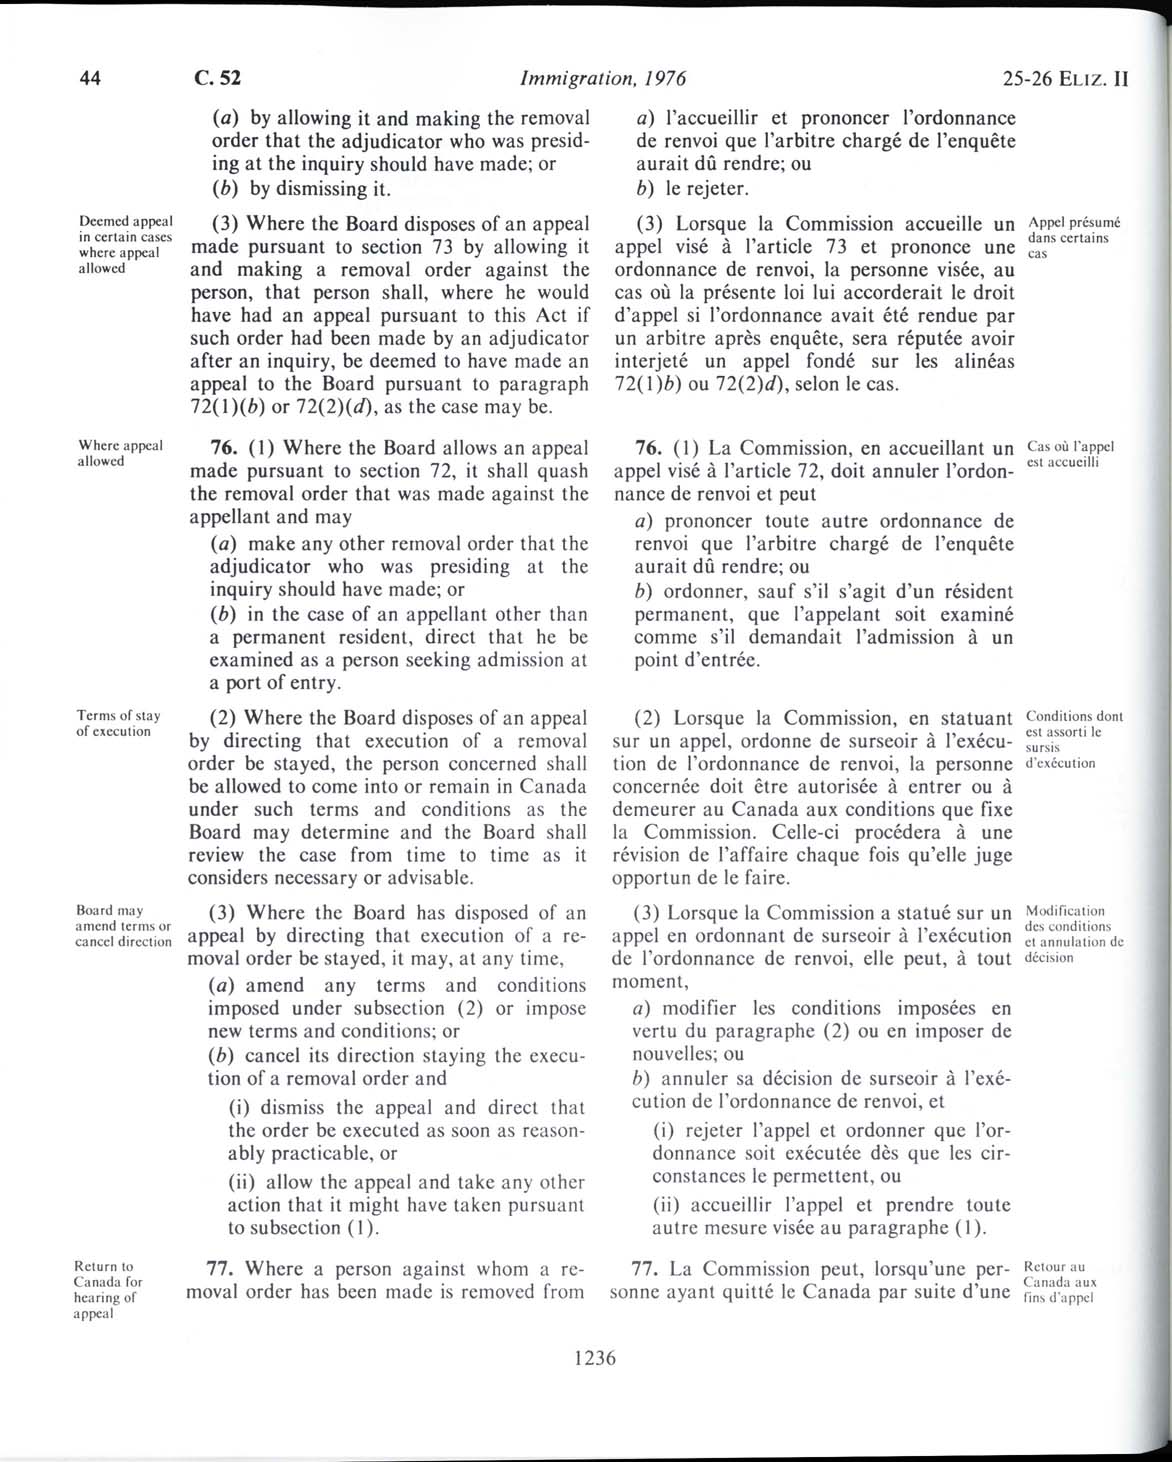 Page 1236 Loi sur l’immigration de 1976